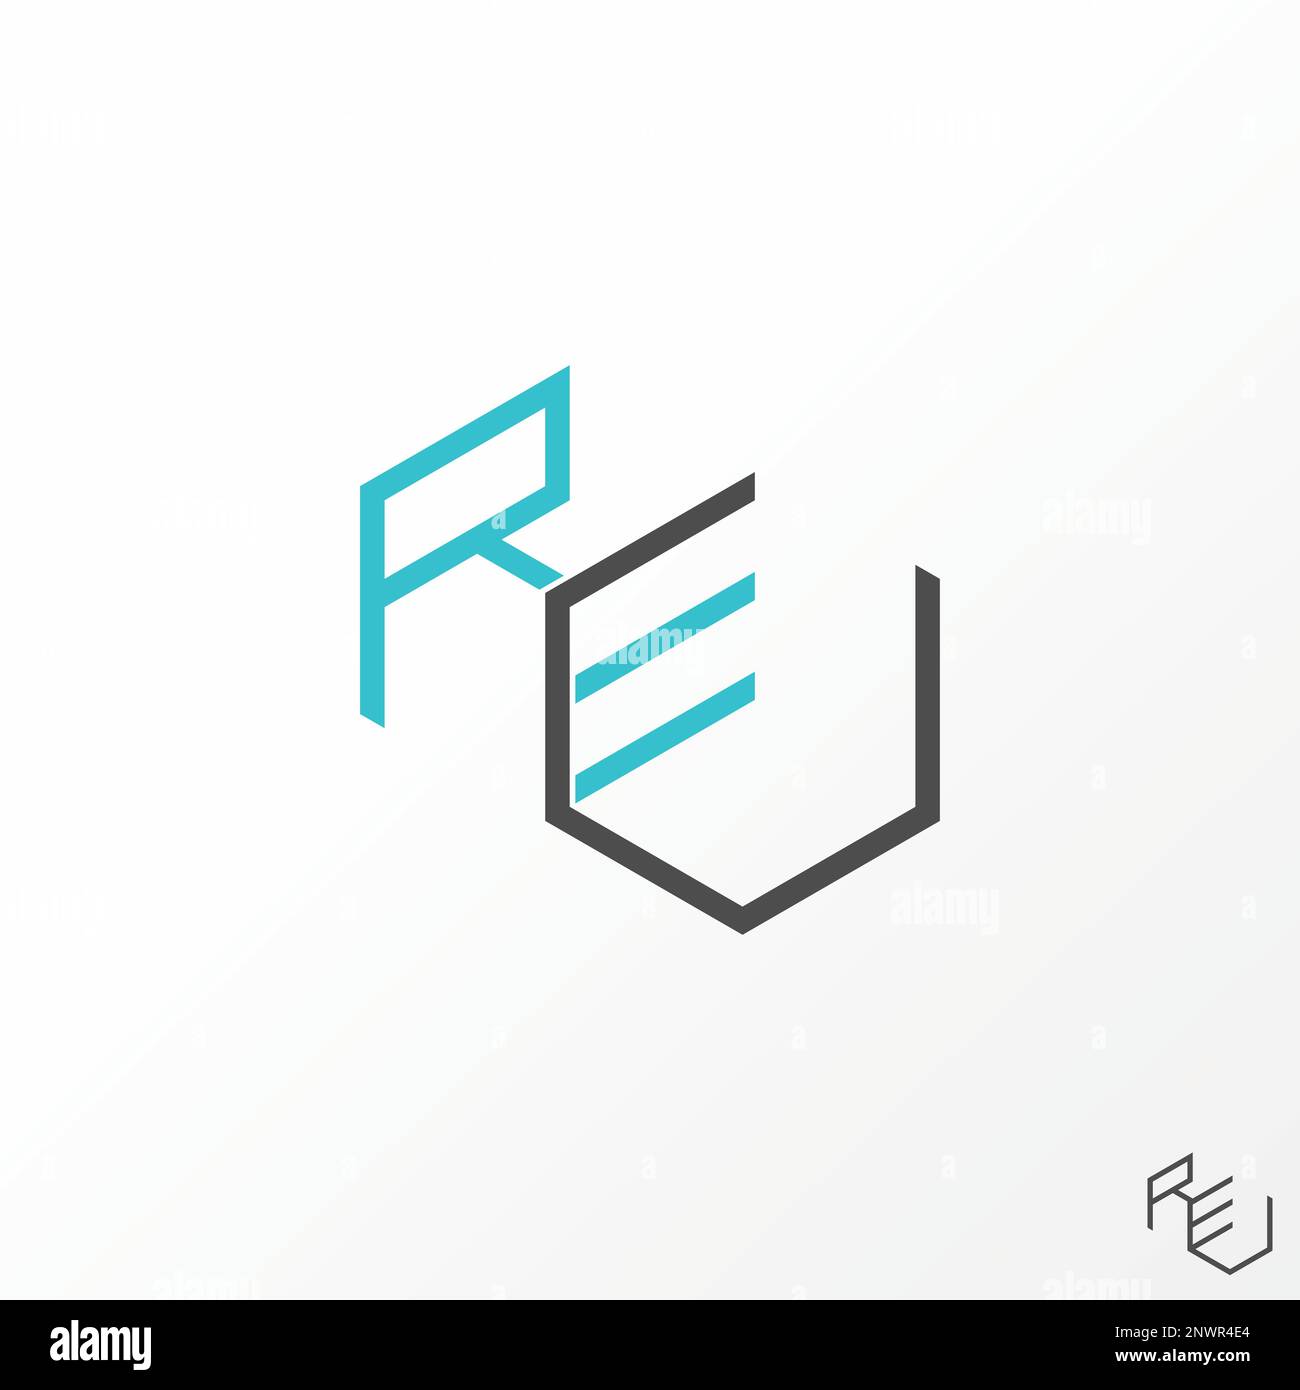 Einfache und einzigartige Buchstaben- oder Wortschrift REU REV RLE RCE-Linienschrift auf 3D doppeltem Sechskant oder Box Grafiklogos abstraktes Konzept Vektormonogramm Stock Vektor